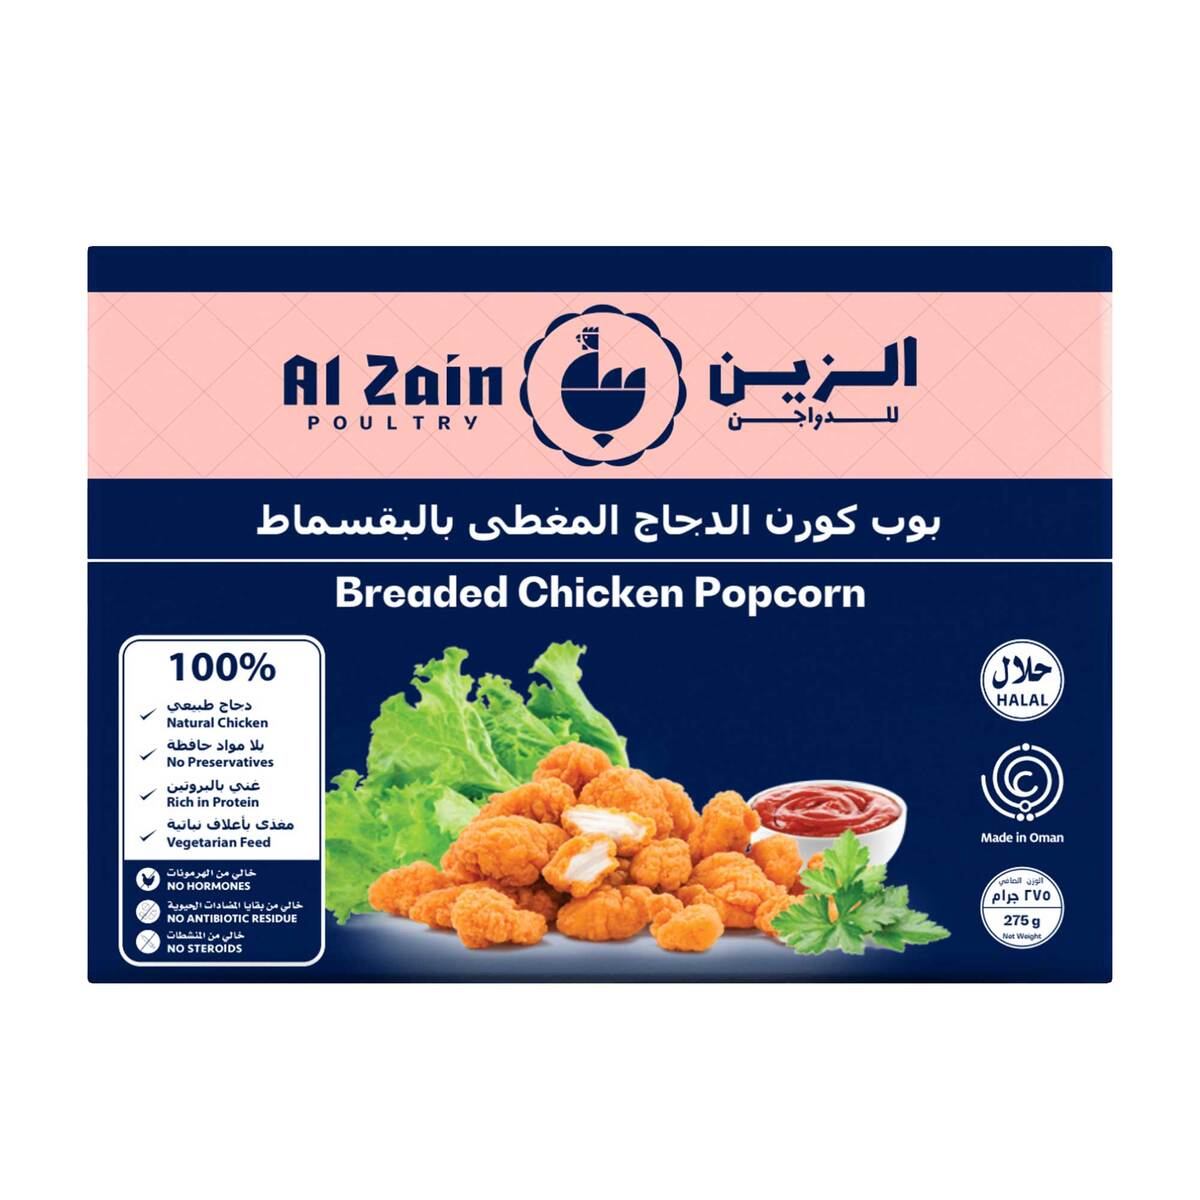 Al Zain Breaded Chicken Popcorn Value Pack 2 x 275 g